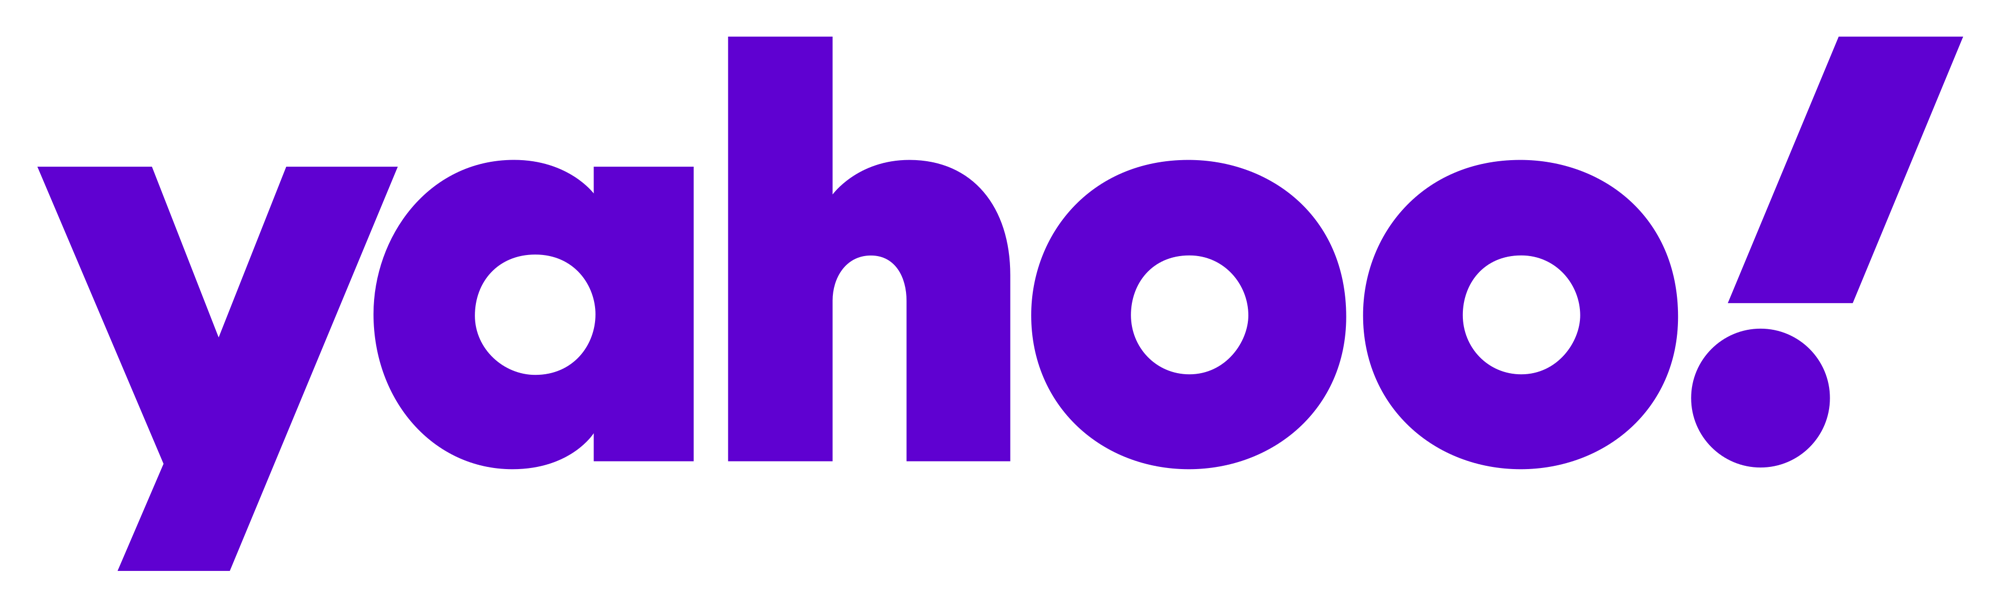 Bildresultat för yahoo new logo